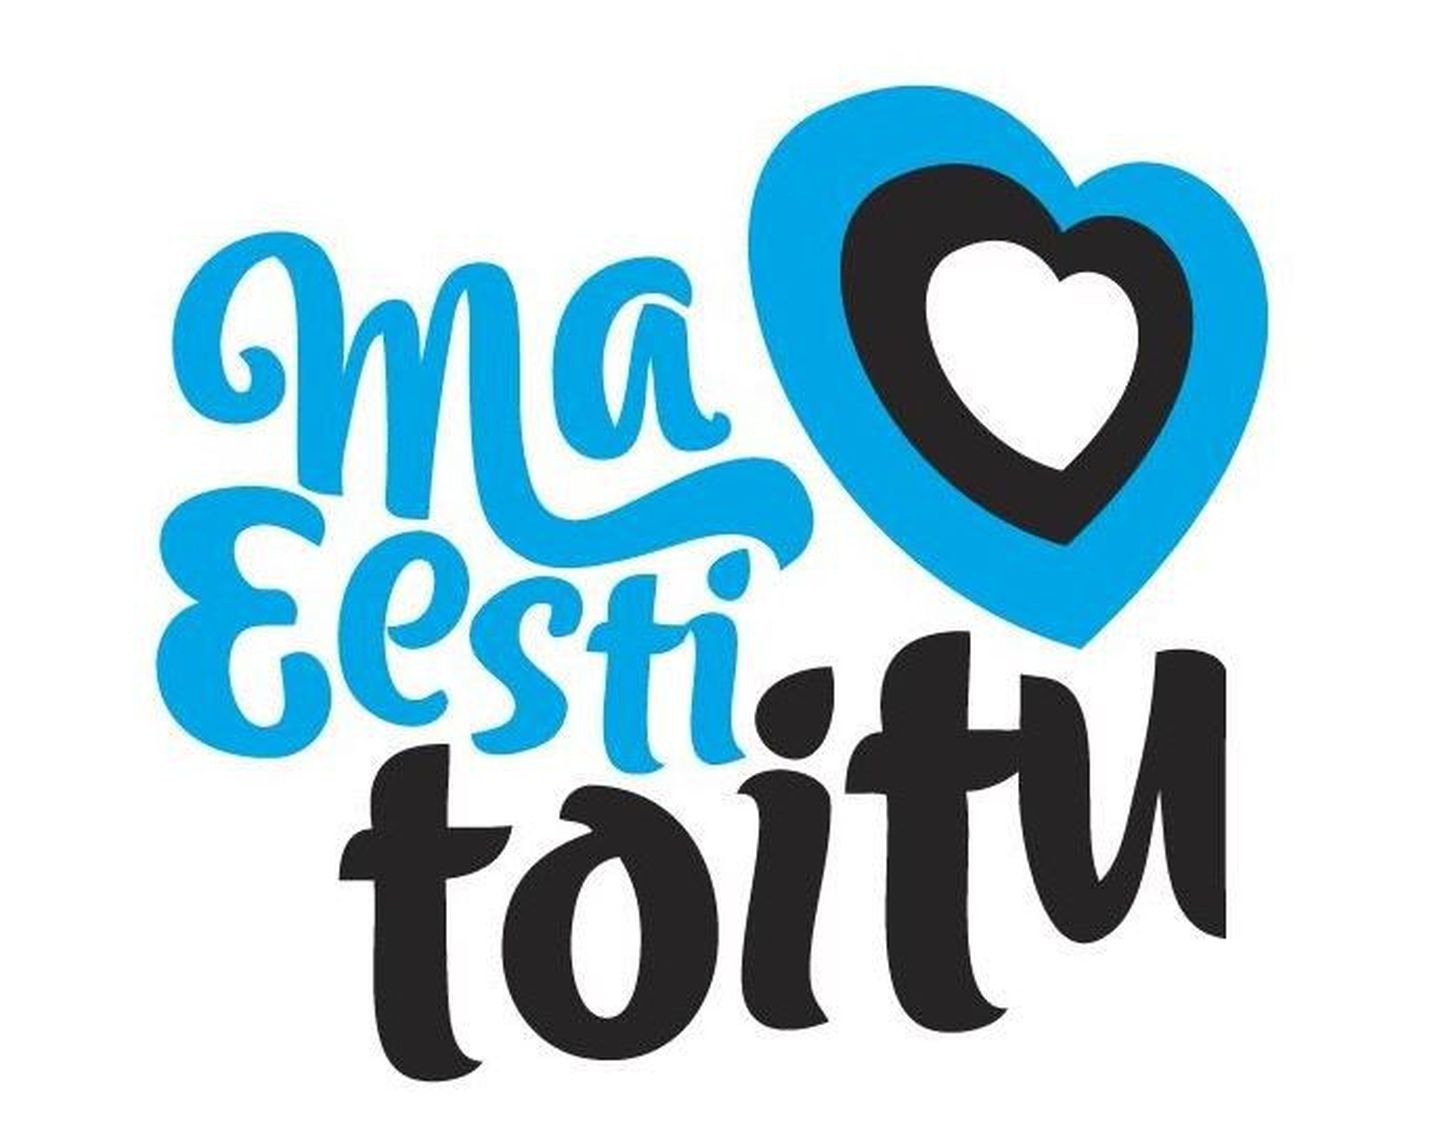 Eesti toidu kuu logo.